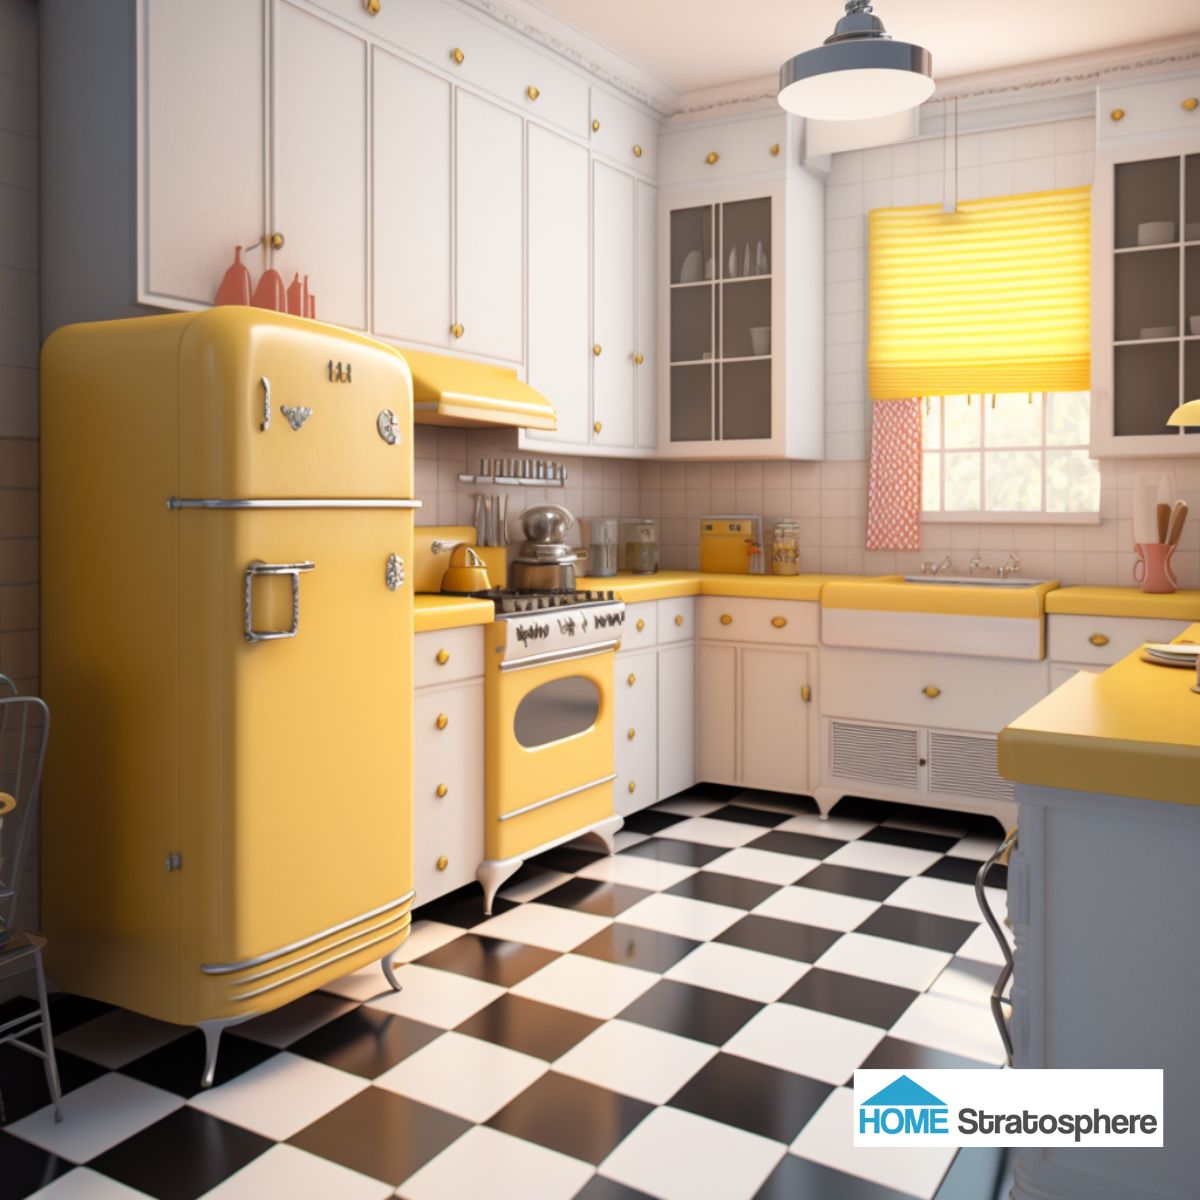 这间厨房的大部分空间都是纯净的白色，这是一个经典的选择，很容易发现任何混乱。格子地板适合现代厨房，但复古的冰箱和台面上的淡黄色使概念保持主题。